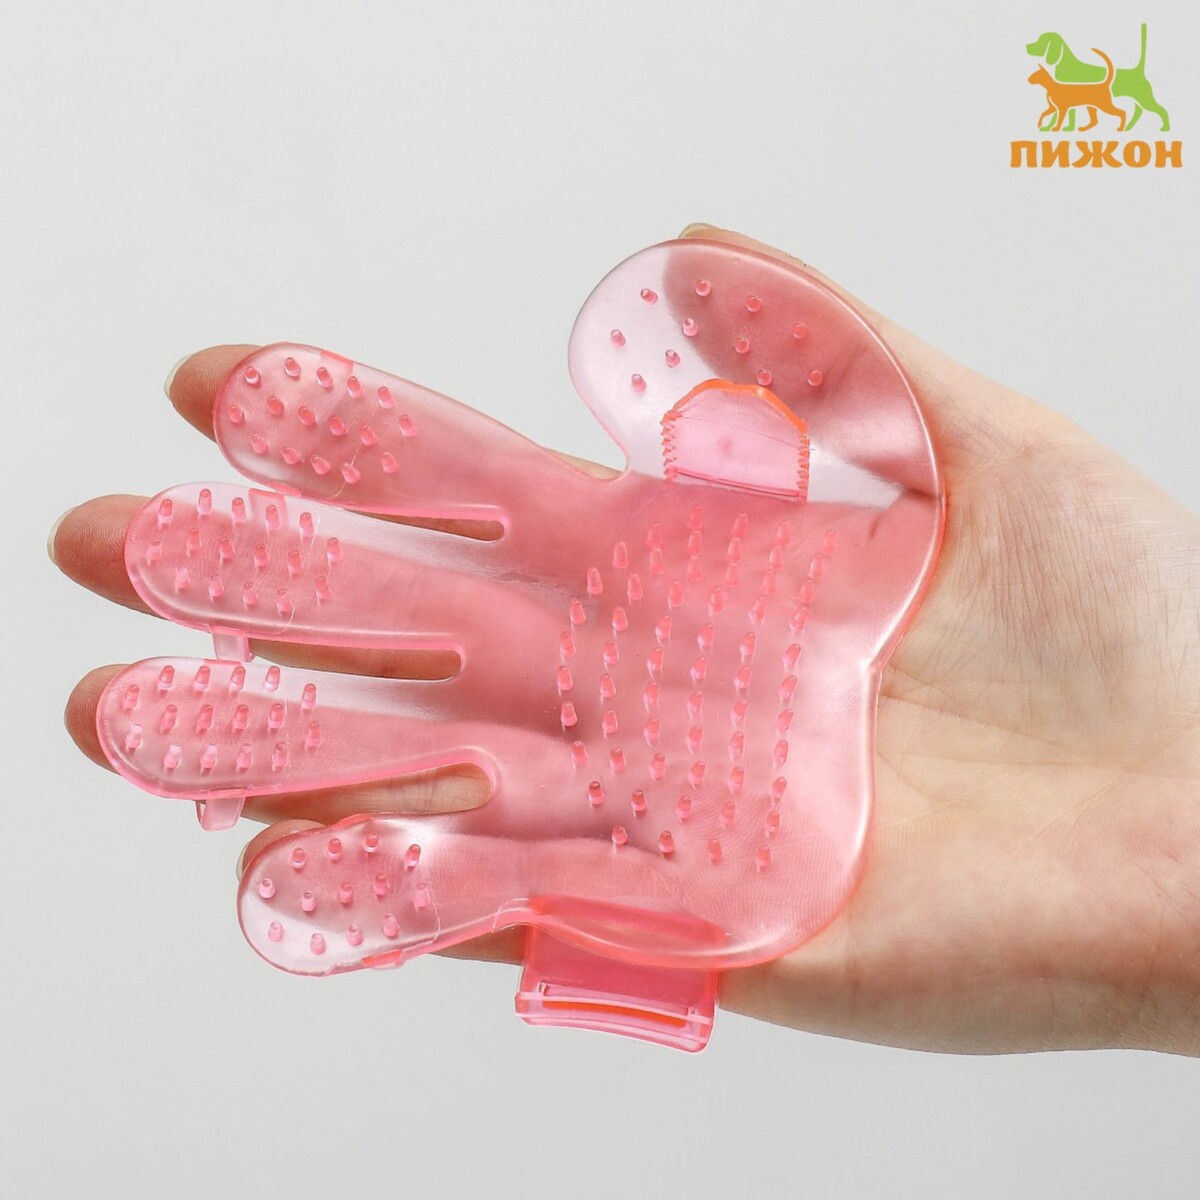 Щетка массажная резиновая на руку, розовая полусфера массажная овальная надувная sportex насос c33514 4 розовая пвх d 33см